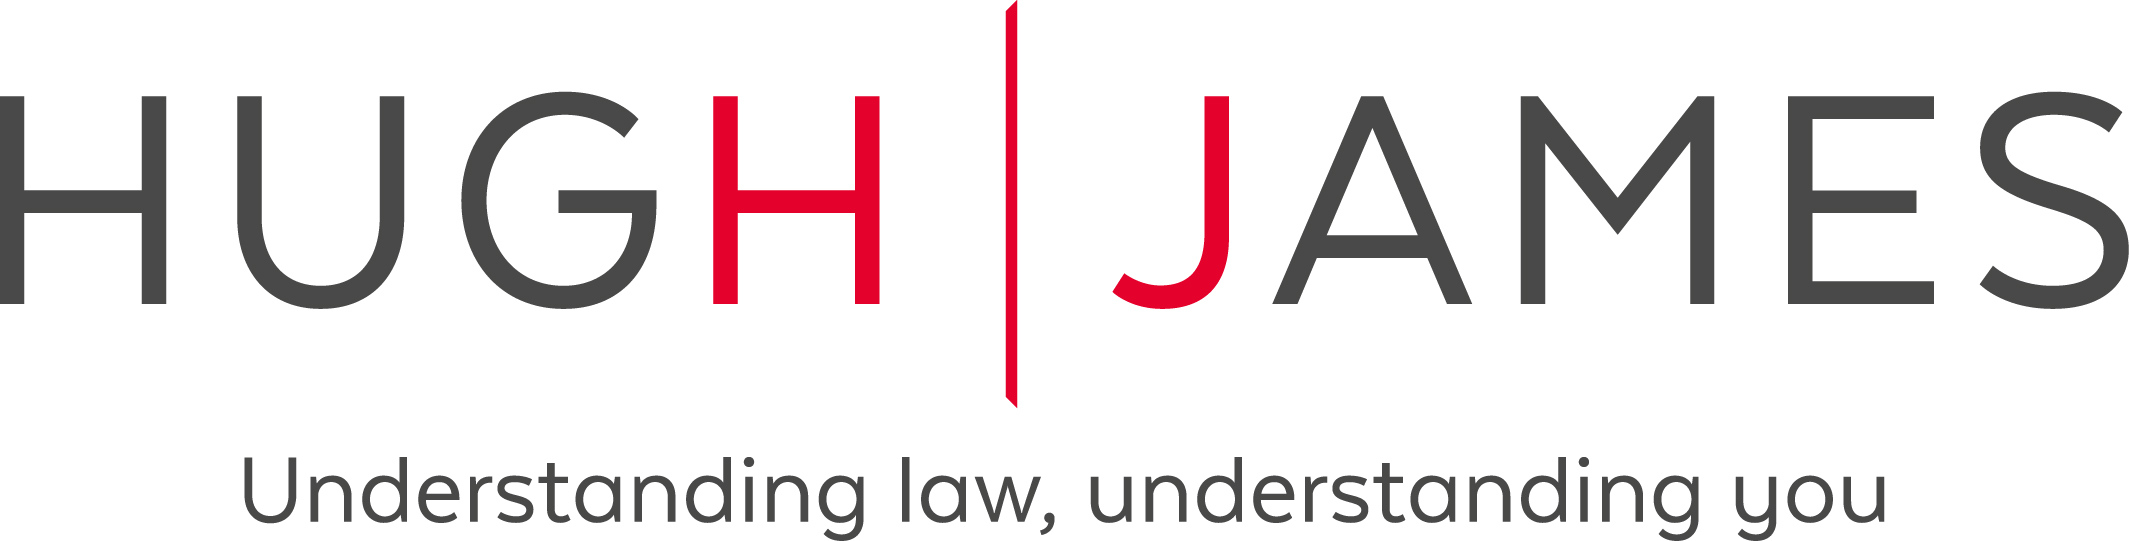 Hugh James Logo